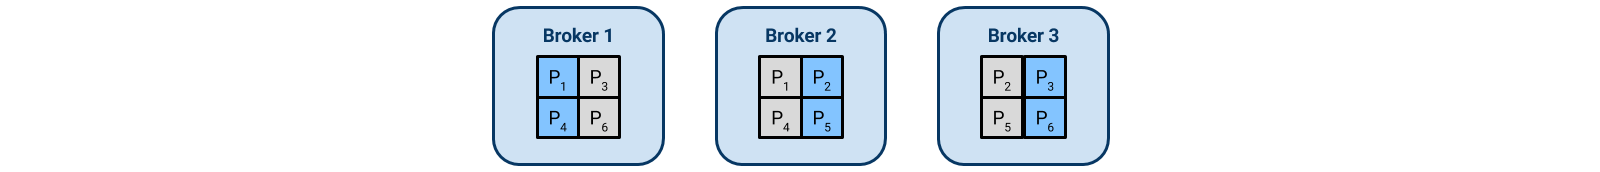 Three-broker Kafka cluster